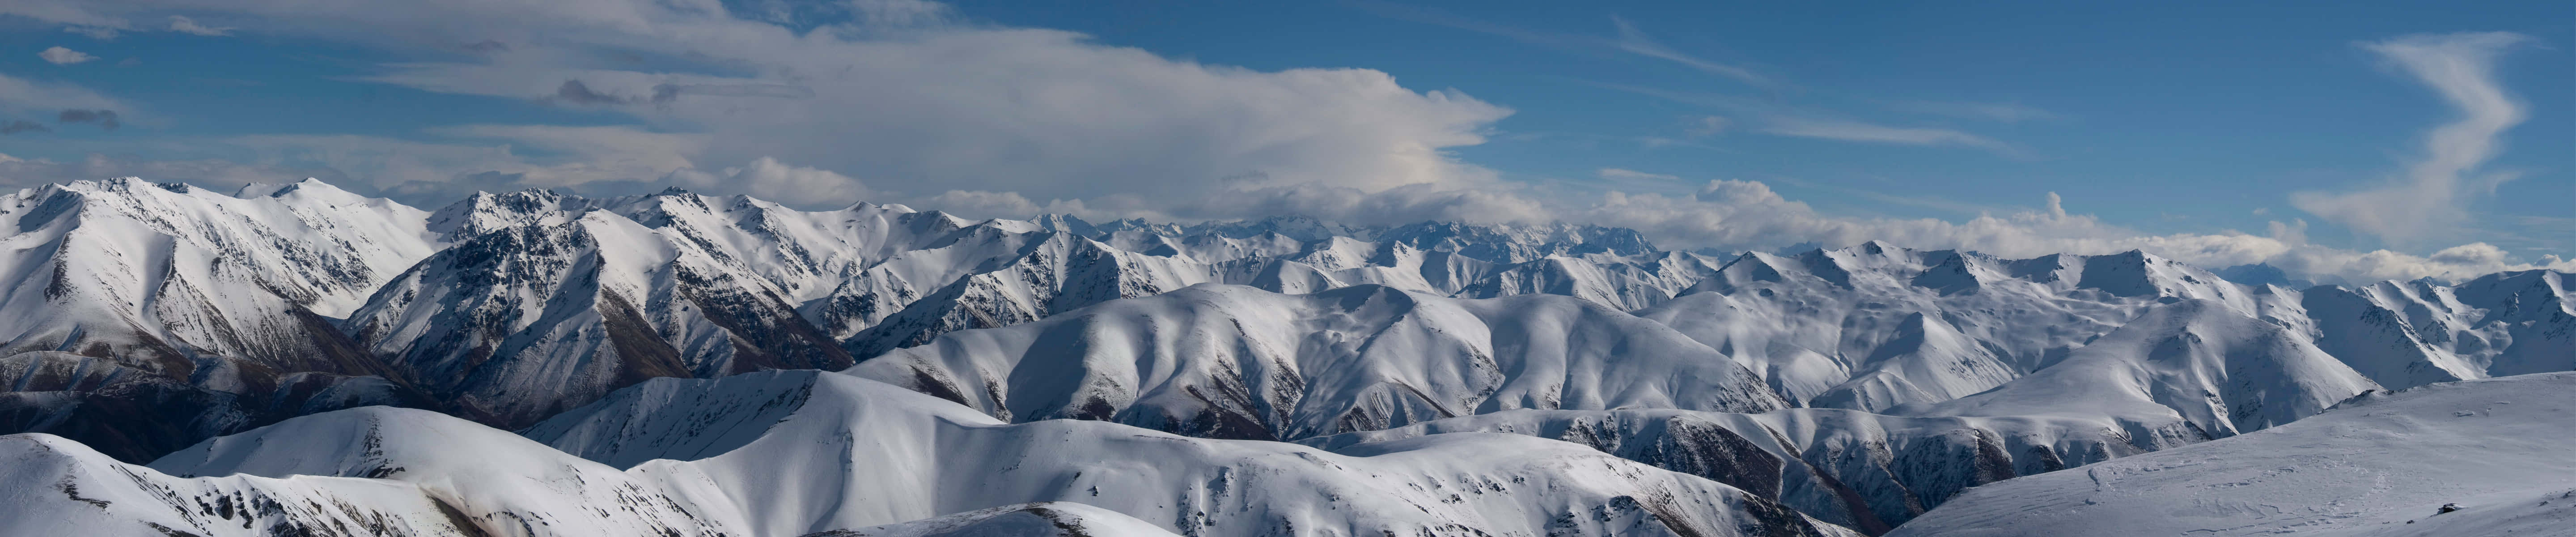 Unacordillera Con Montañas Cubiertas De Nieve Y Nubes Fondo de pantalla